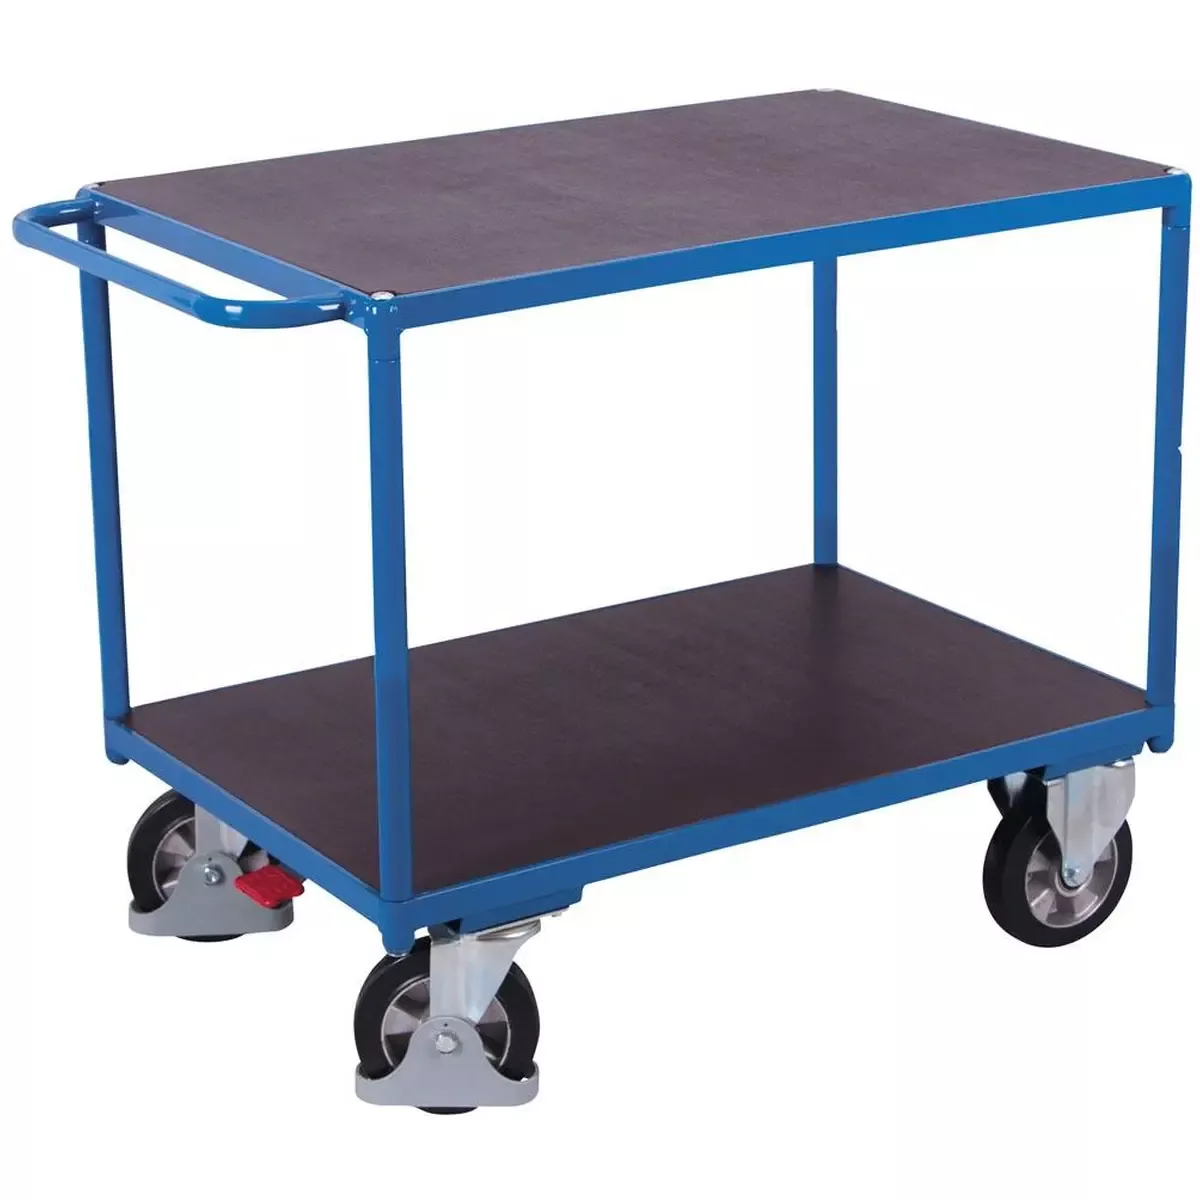 Schwerlast-Tischwagen, 2 Ladeflächen LxB 1195x800 mm, Außenmaße LxBxH 1390x800x925 mm, Traglast 1000 kg